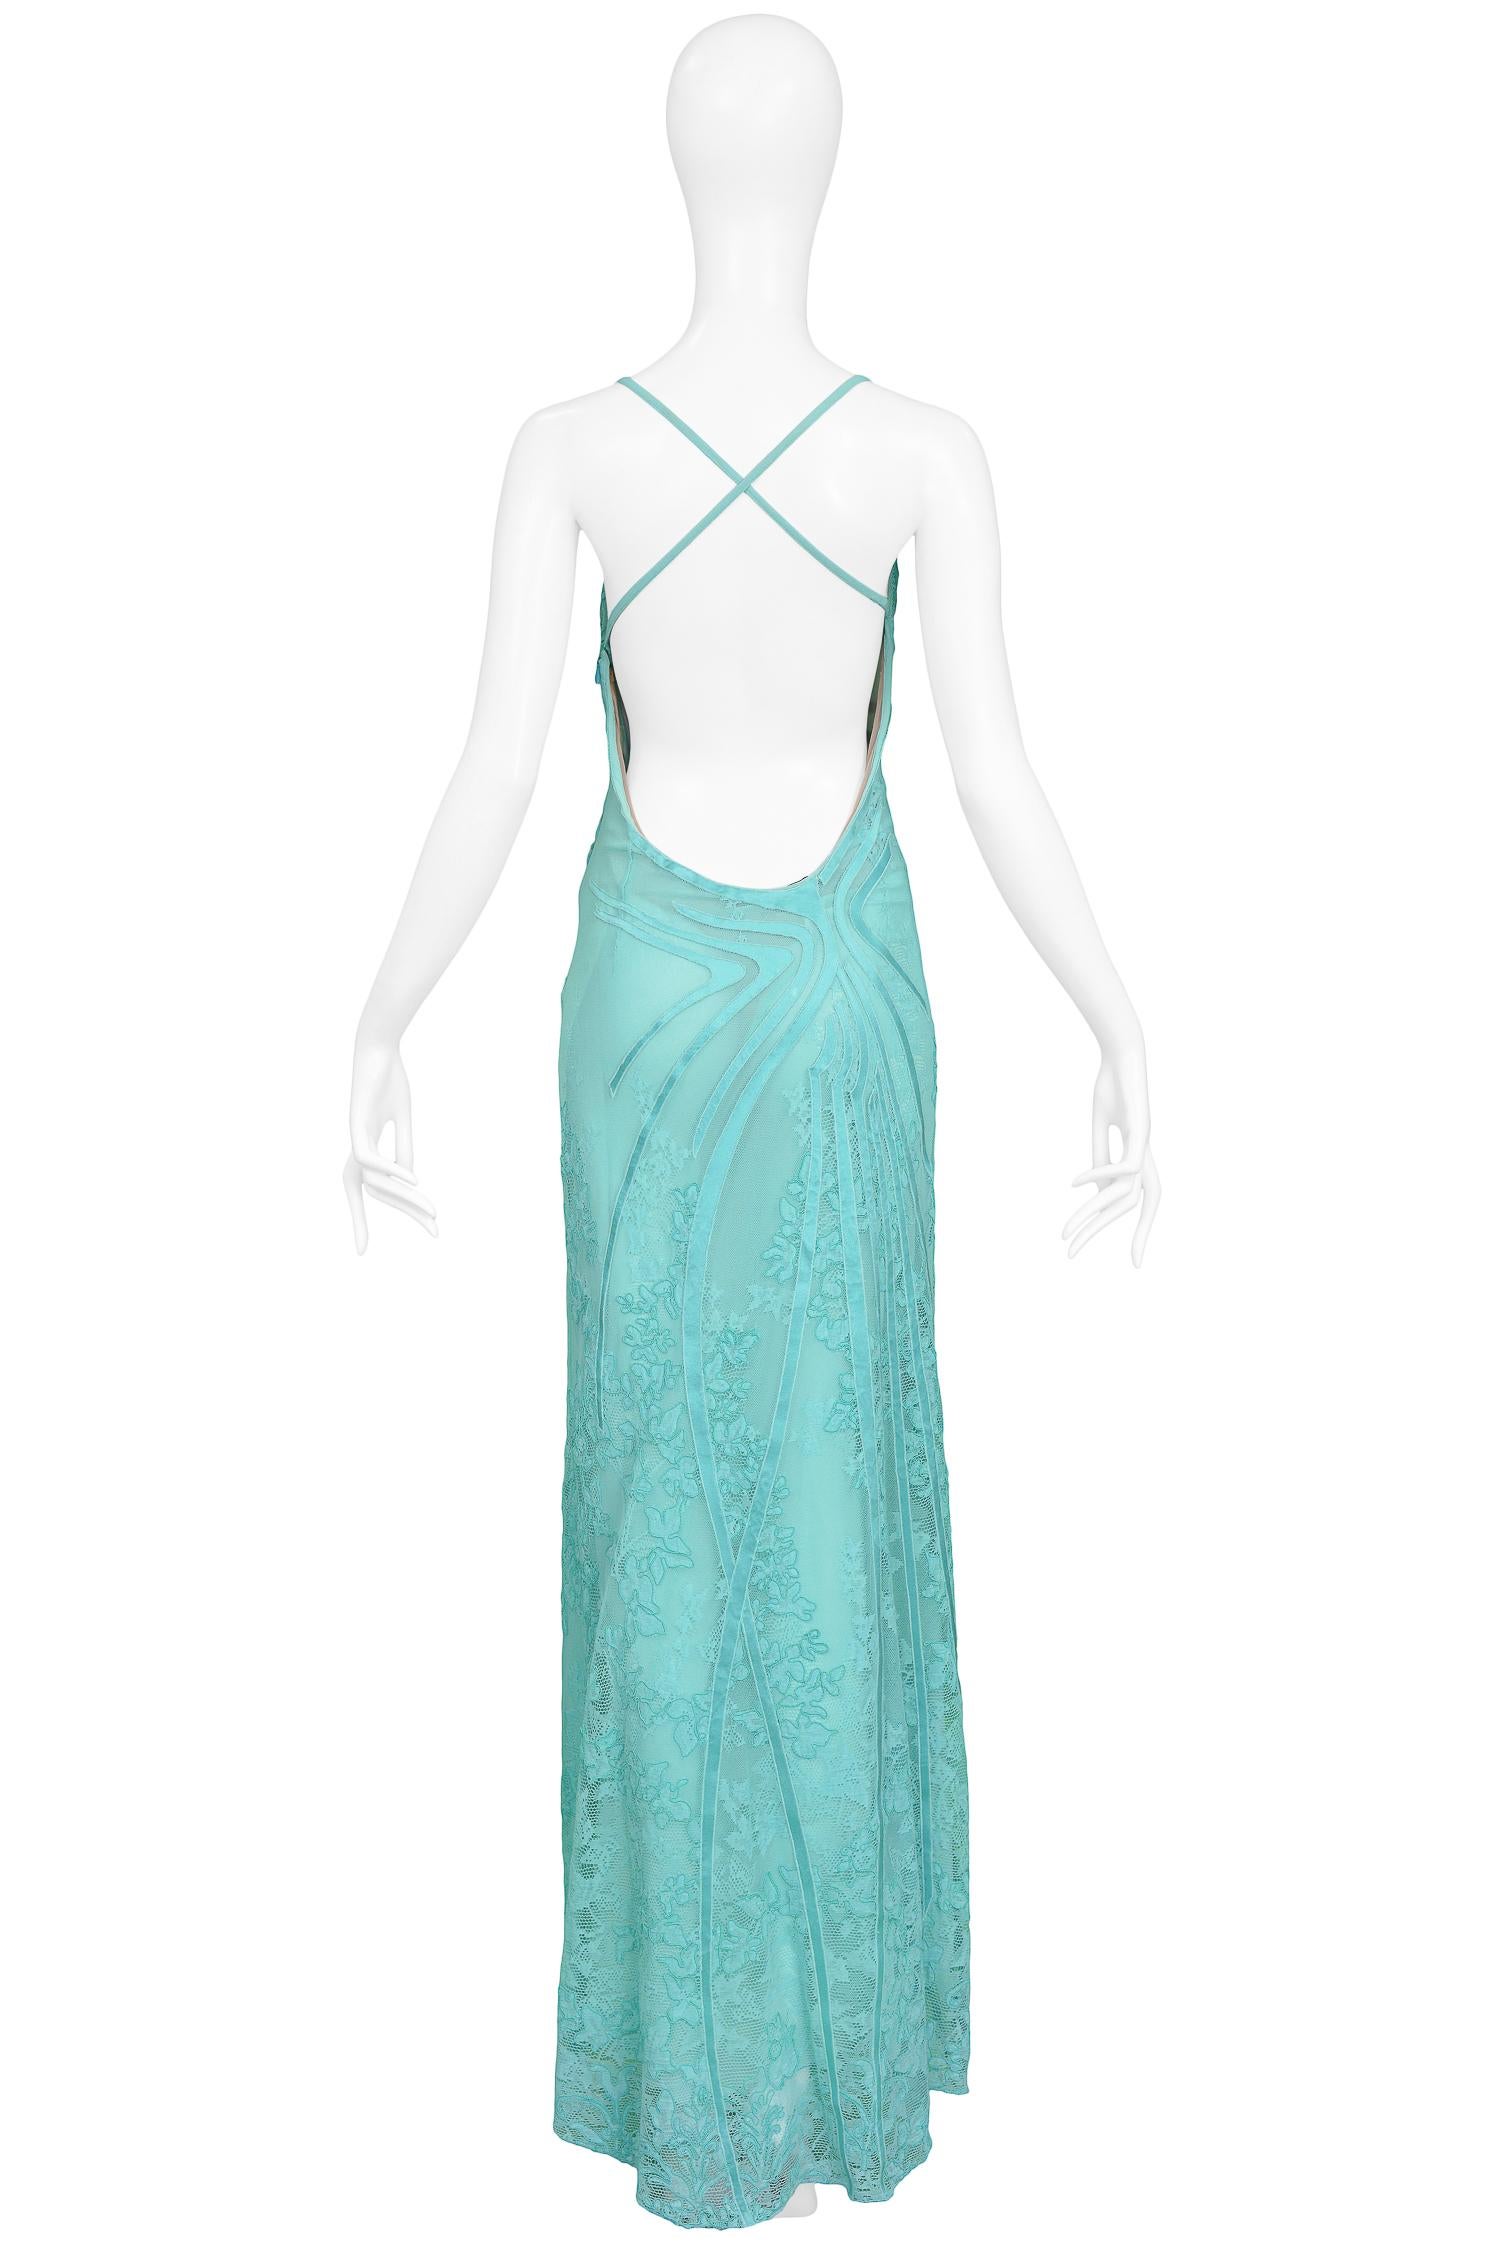 Vintage Versace SS 2000 Seafoam Lace Gown 1